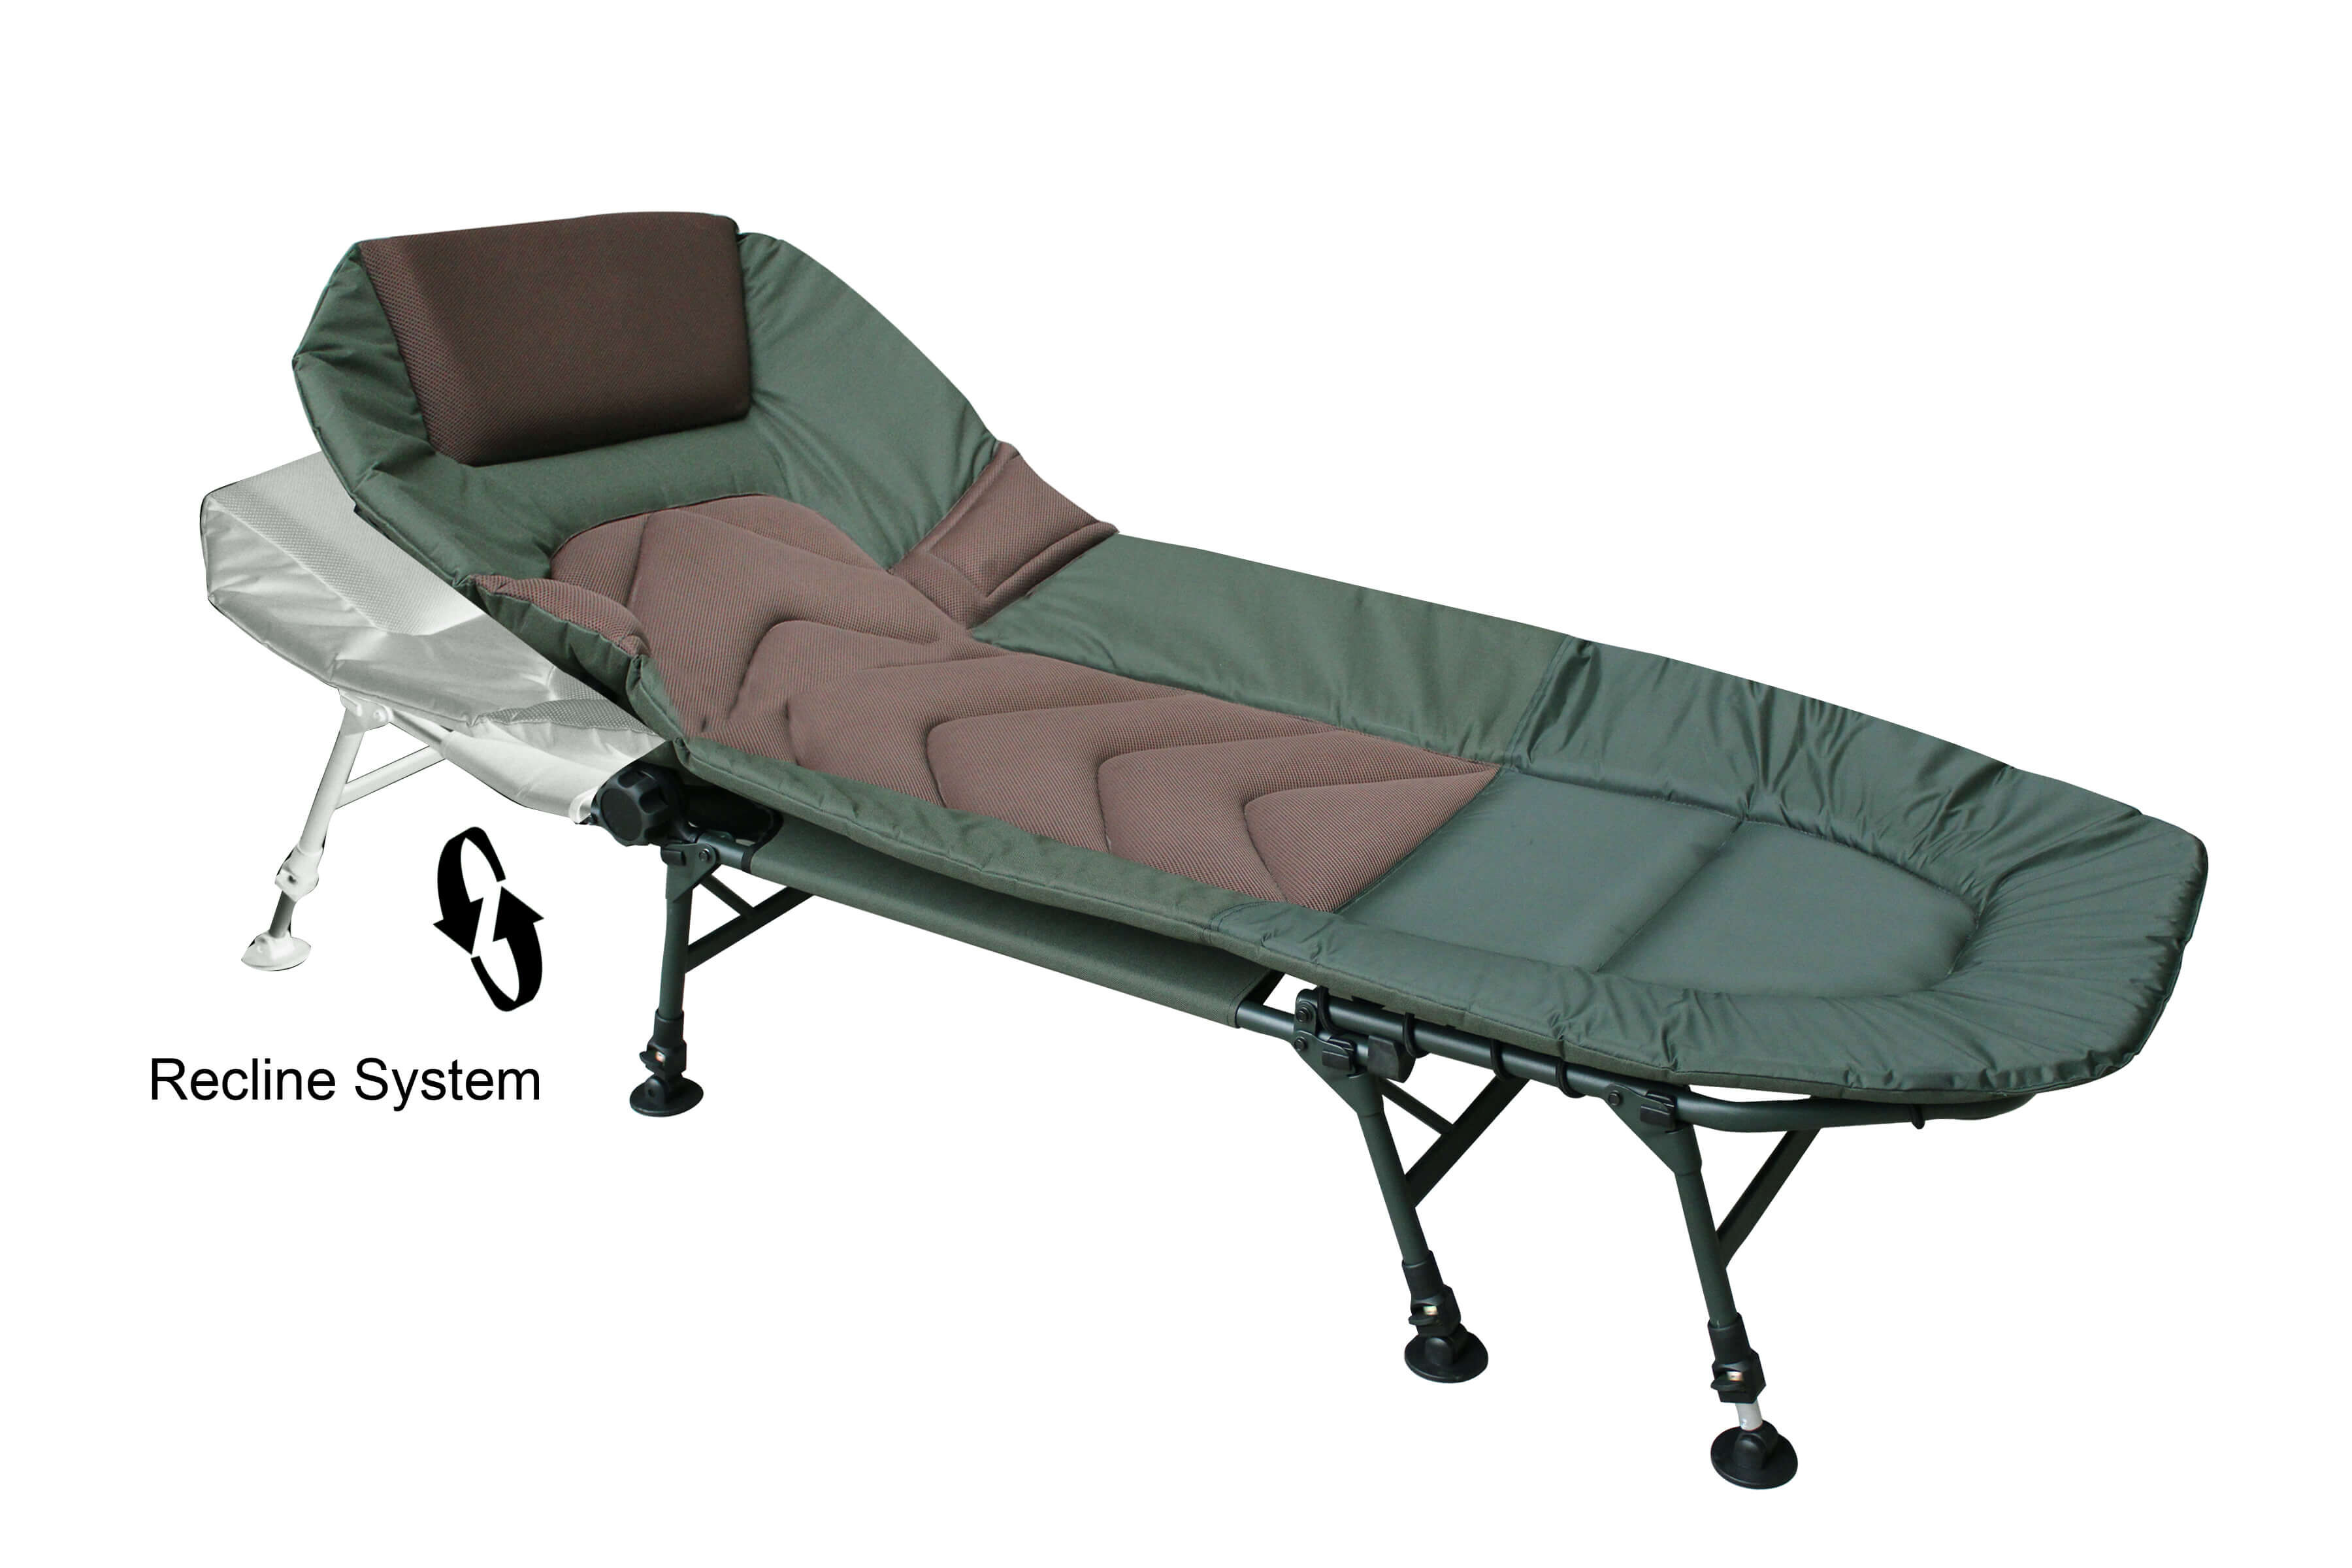 Aufgrund der Matratzenunterstützung ist diese Campingliege auch für schwere Personen geeignet, welche die Angelliege im Sitzen nutzen wollen.